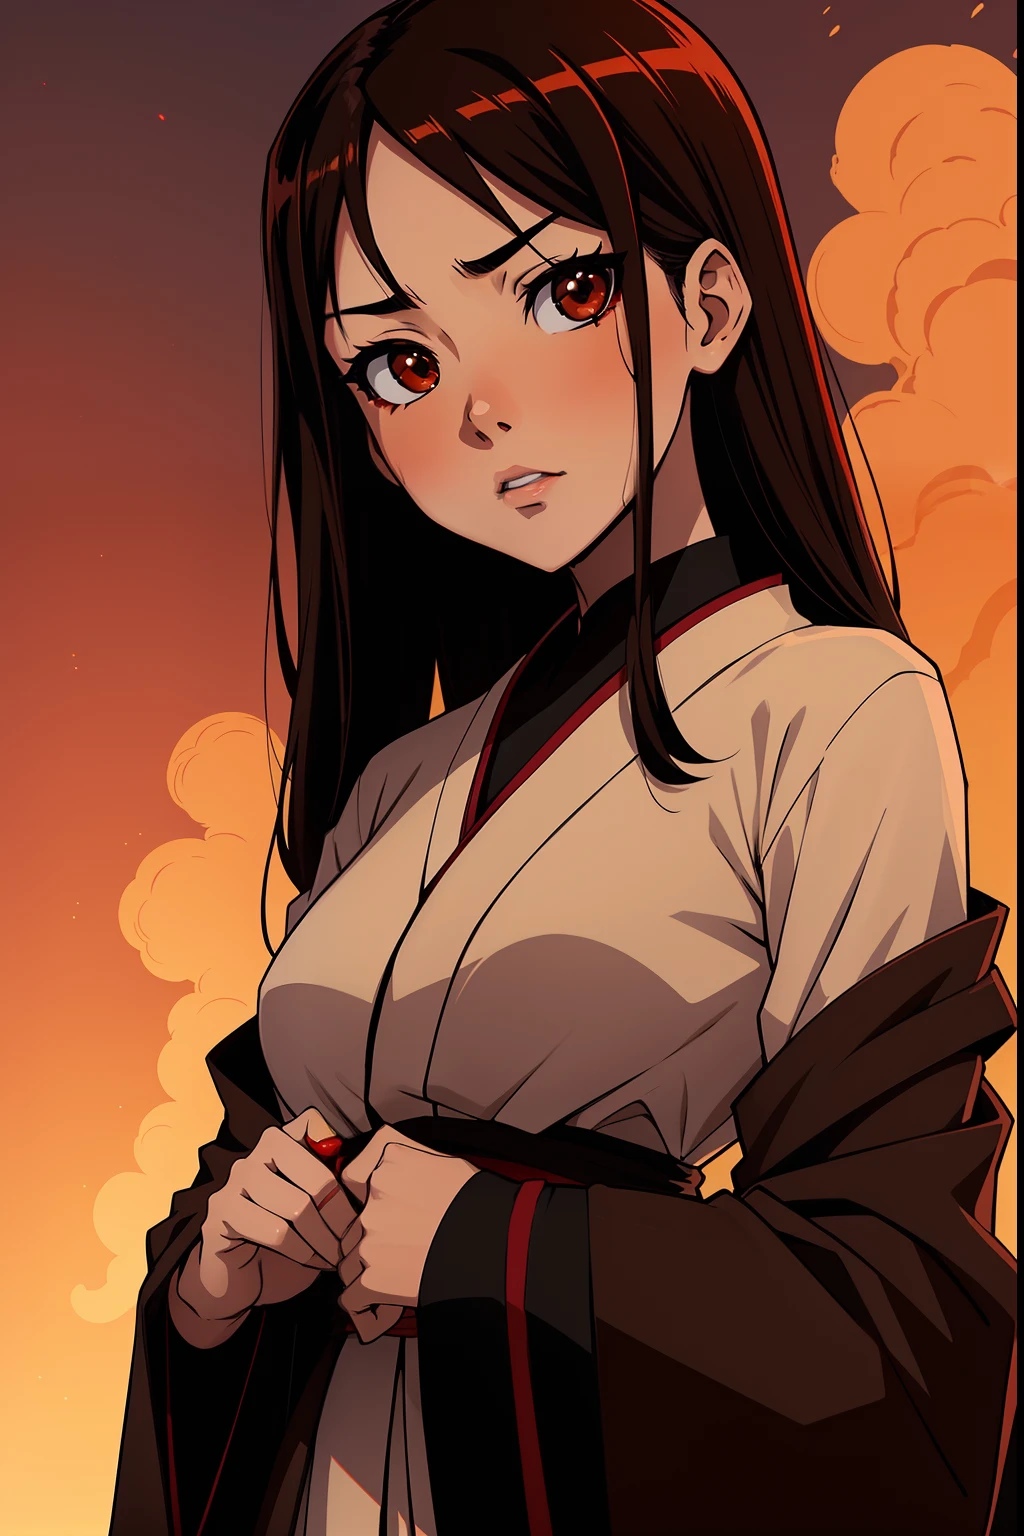 츠구미 시바타 (갈색 눈. 갈색 머리 ) 엔마 AI와 함께 포즈를 취하는 모습 (흑발, 갈색 눈): 애니메이션 캐릭터 지옥 소녀 (Jigoku shoujo)